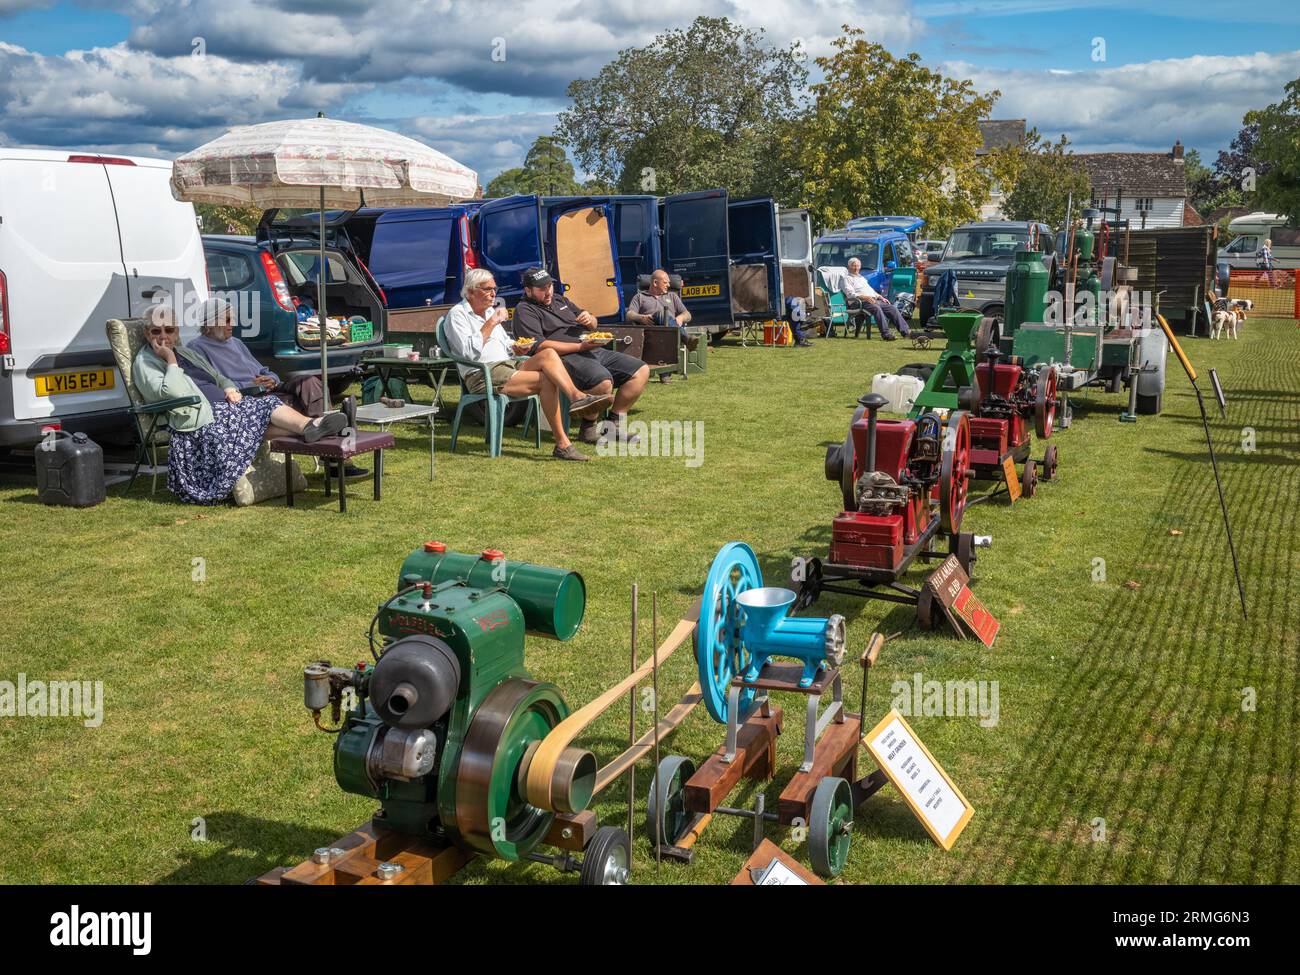 Les passionnés de moteurs stationnaires vintage s'assoient et exposent leurs machines lors d'une fête de village à Wisborough Green, West Sussex, Royaume-Uni. Banque D'Images